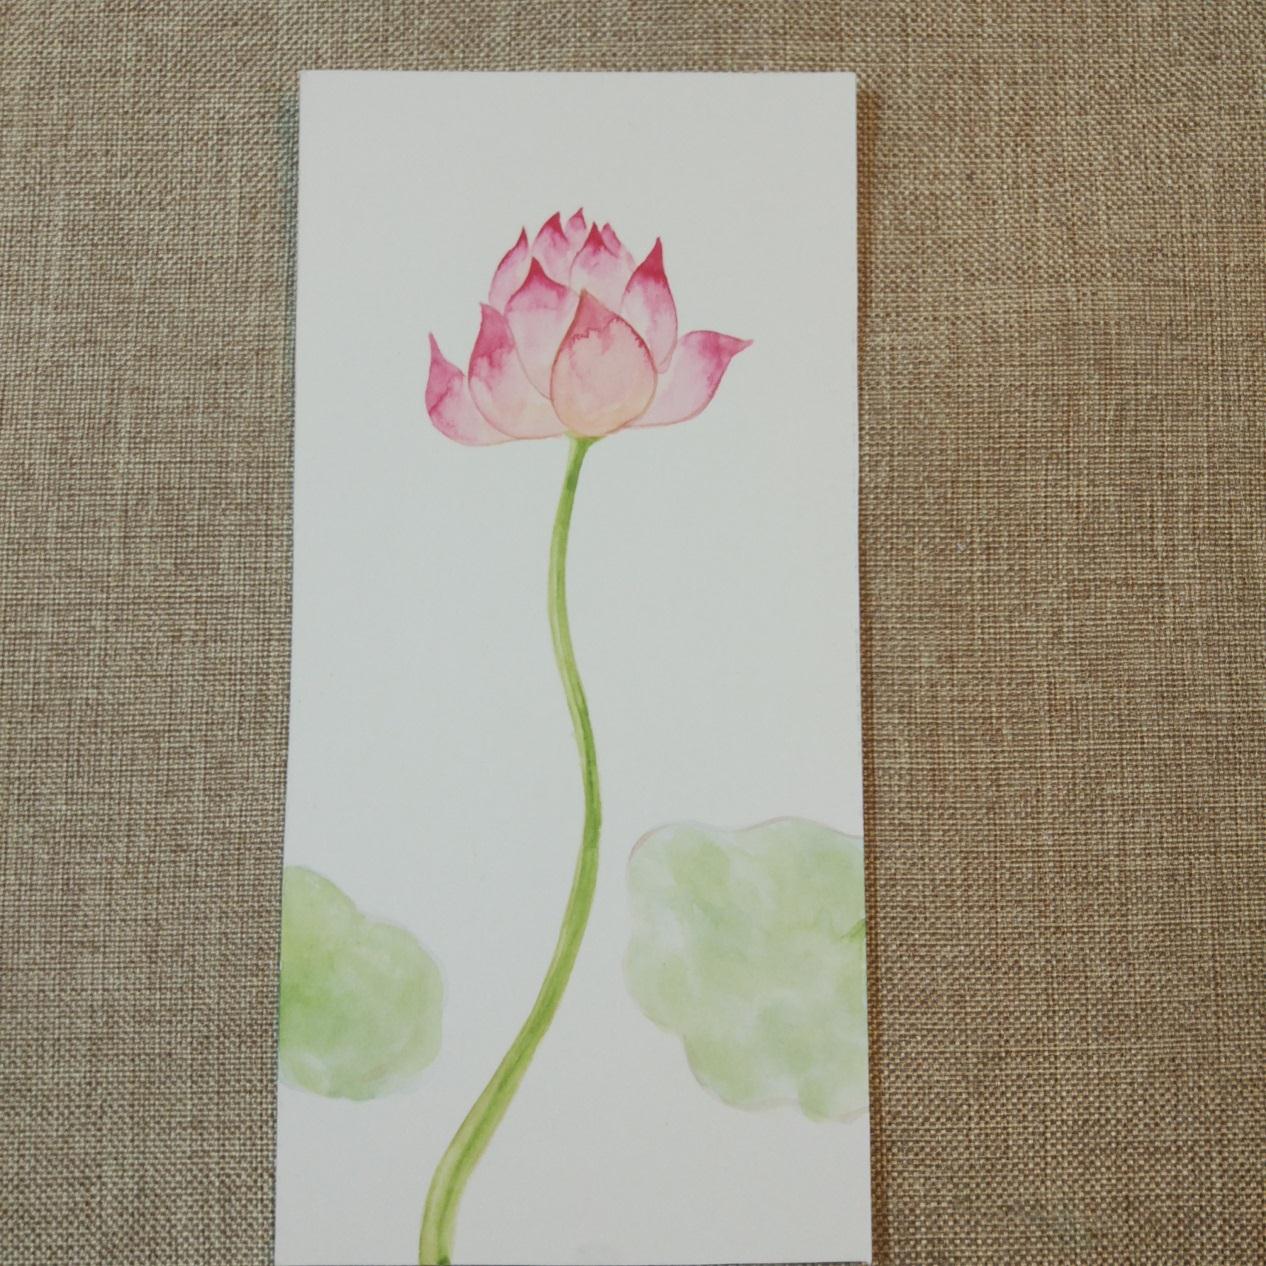 教你彩绘漂亮的花卉书签 荷花的画法详细步骤图解